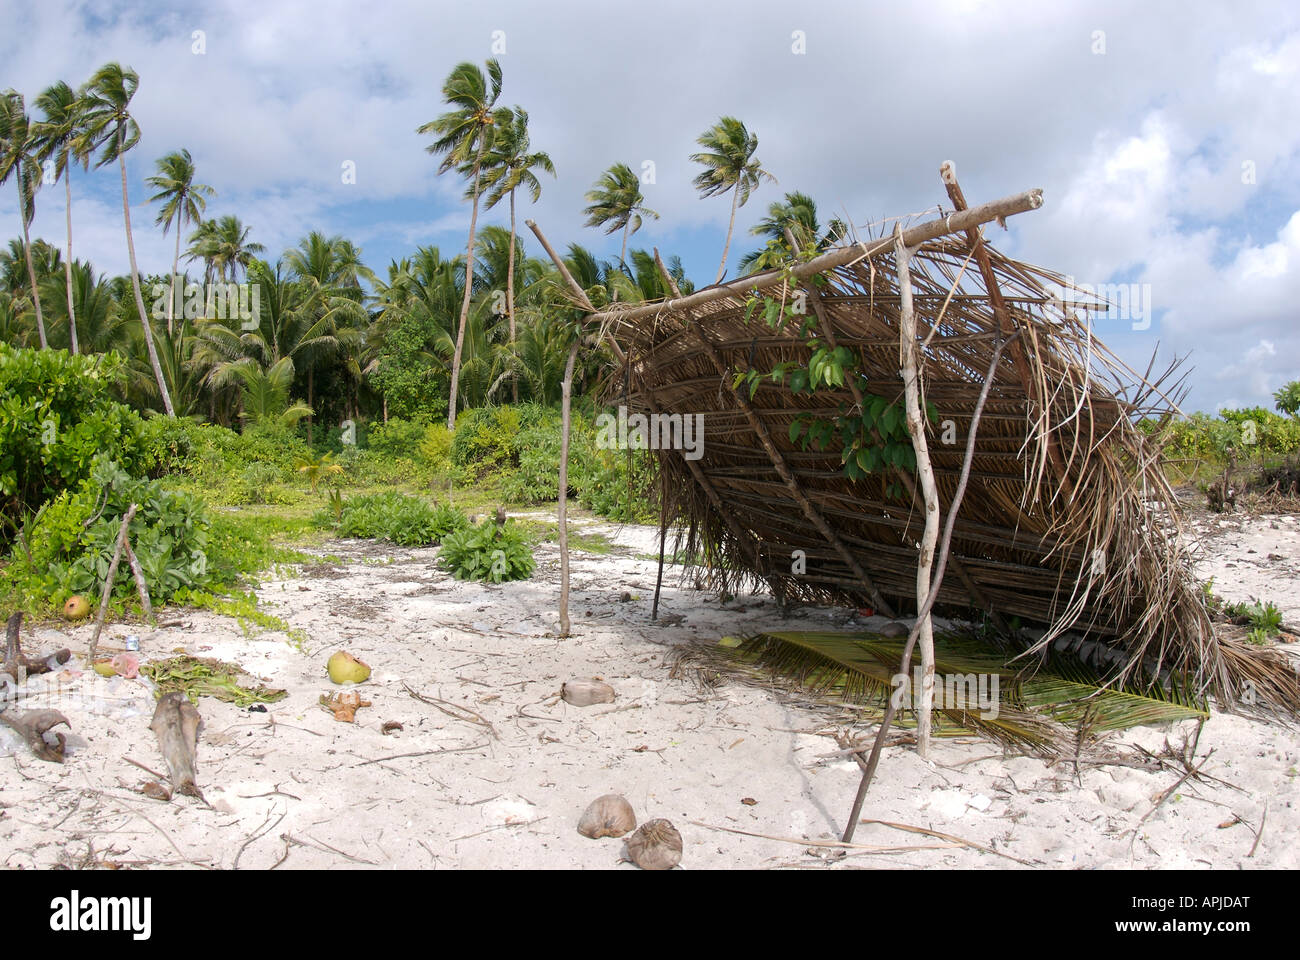 Una áspera Fisherman's shack en una región remota de Indonesia Foto de stock